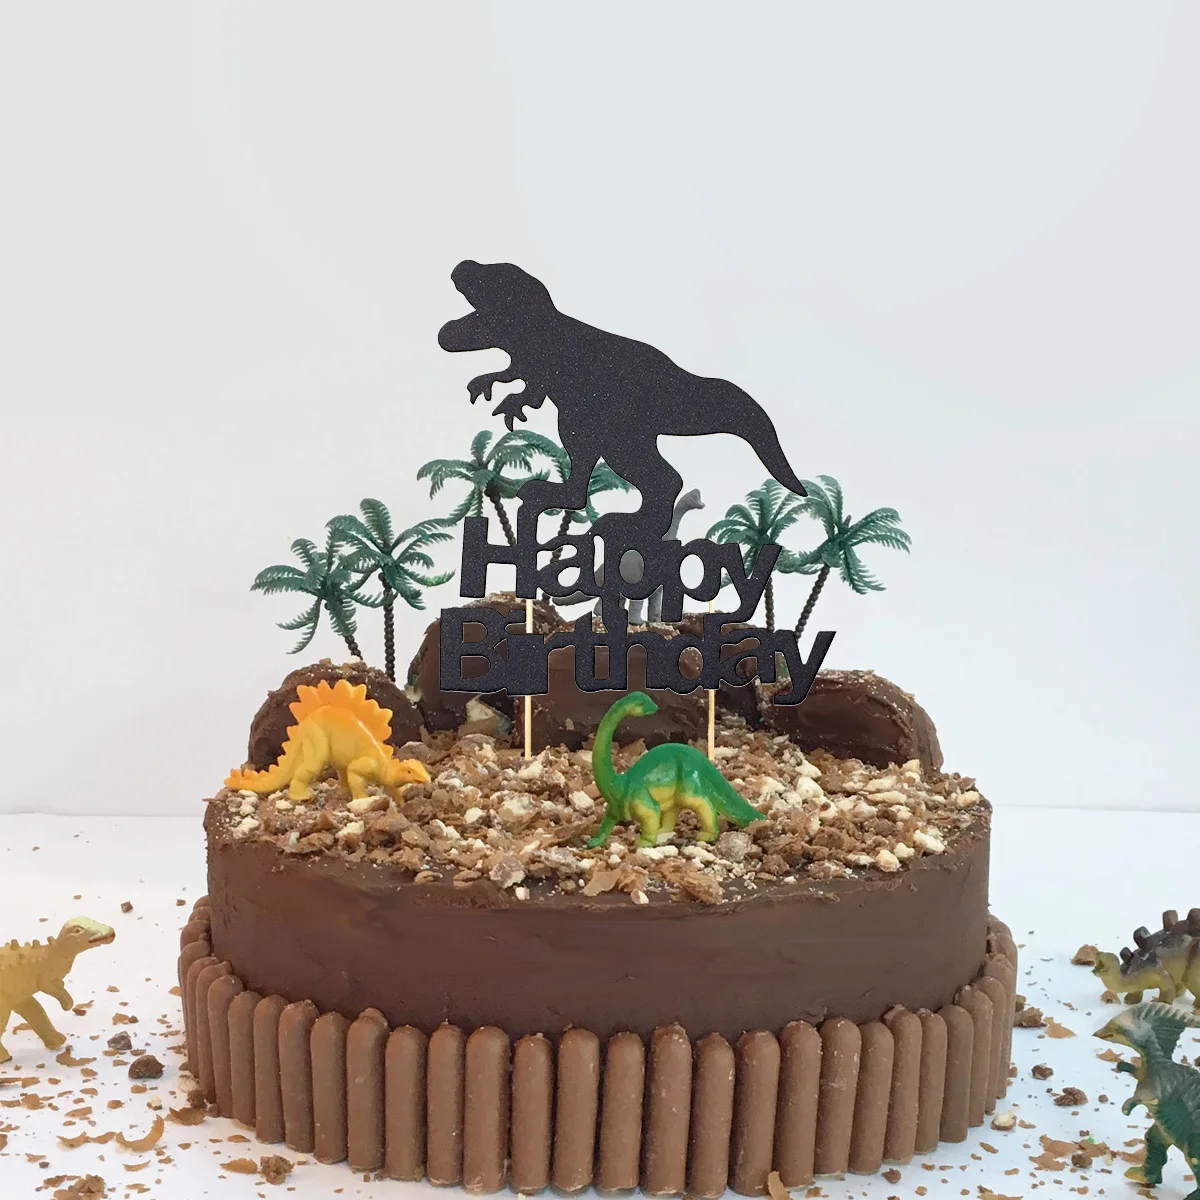 

Топпер для торта на день рождения с динозавром, черный блестящий Т-Рекс, украшение для торта на день рождения, динозавр, джунгли, тематическая вечеринка динозавра Юрского периода